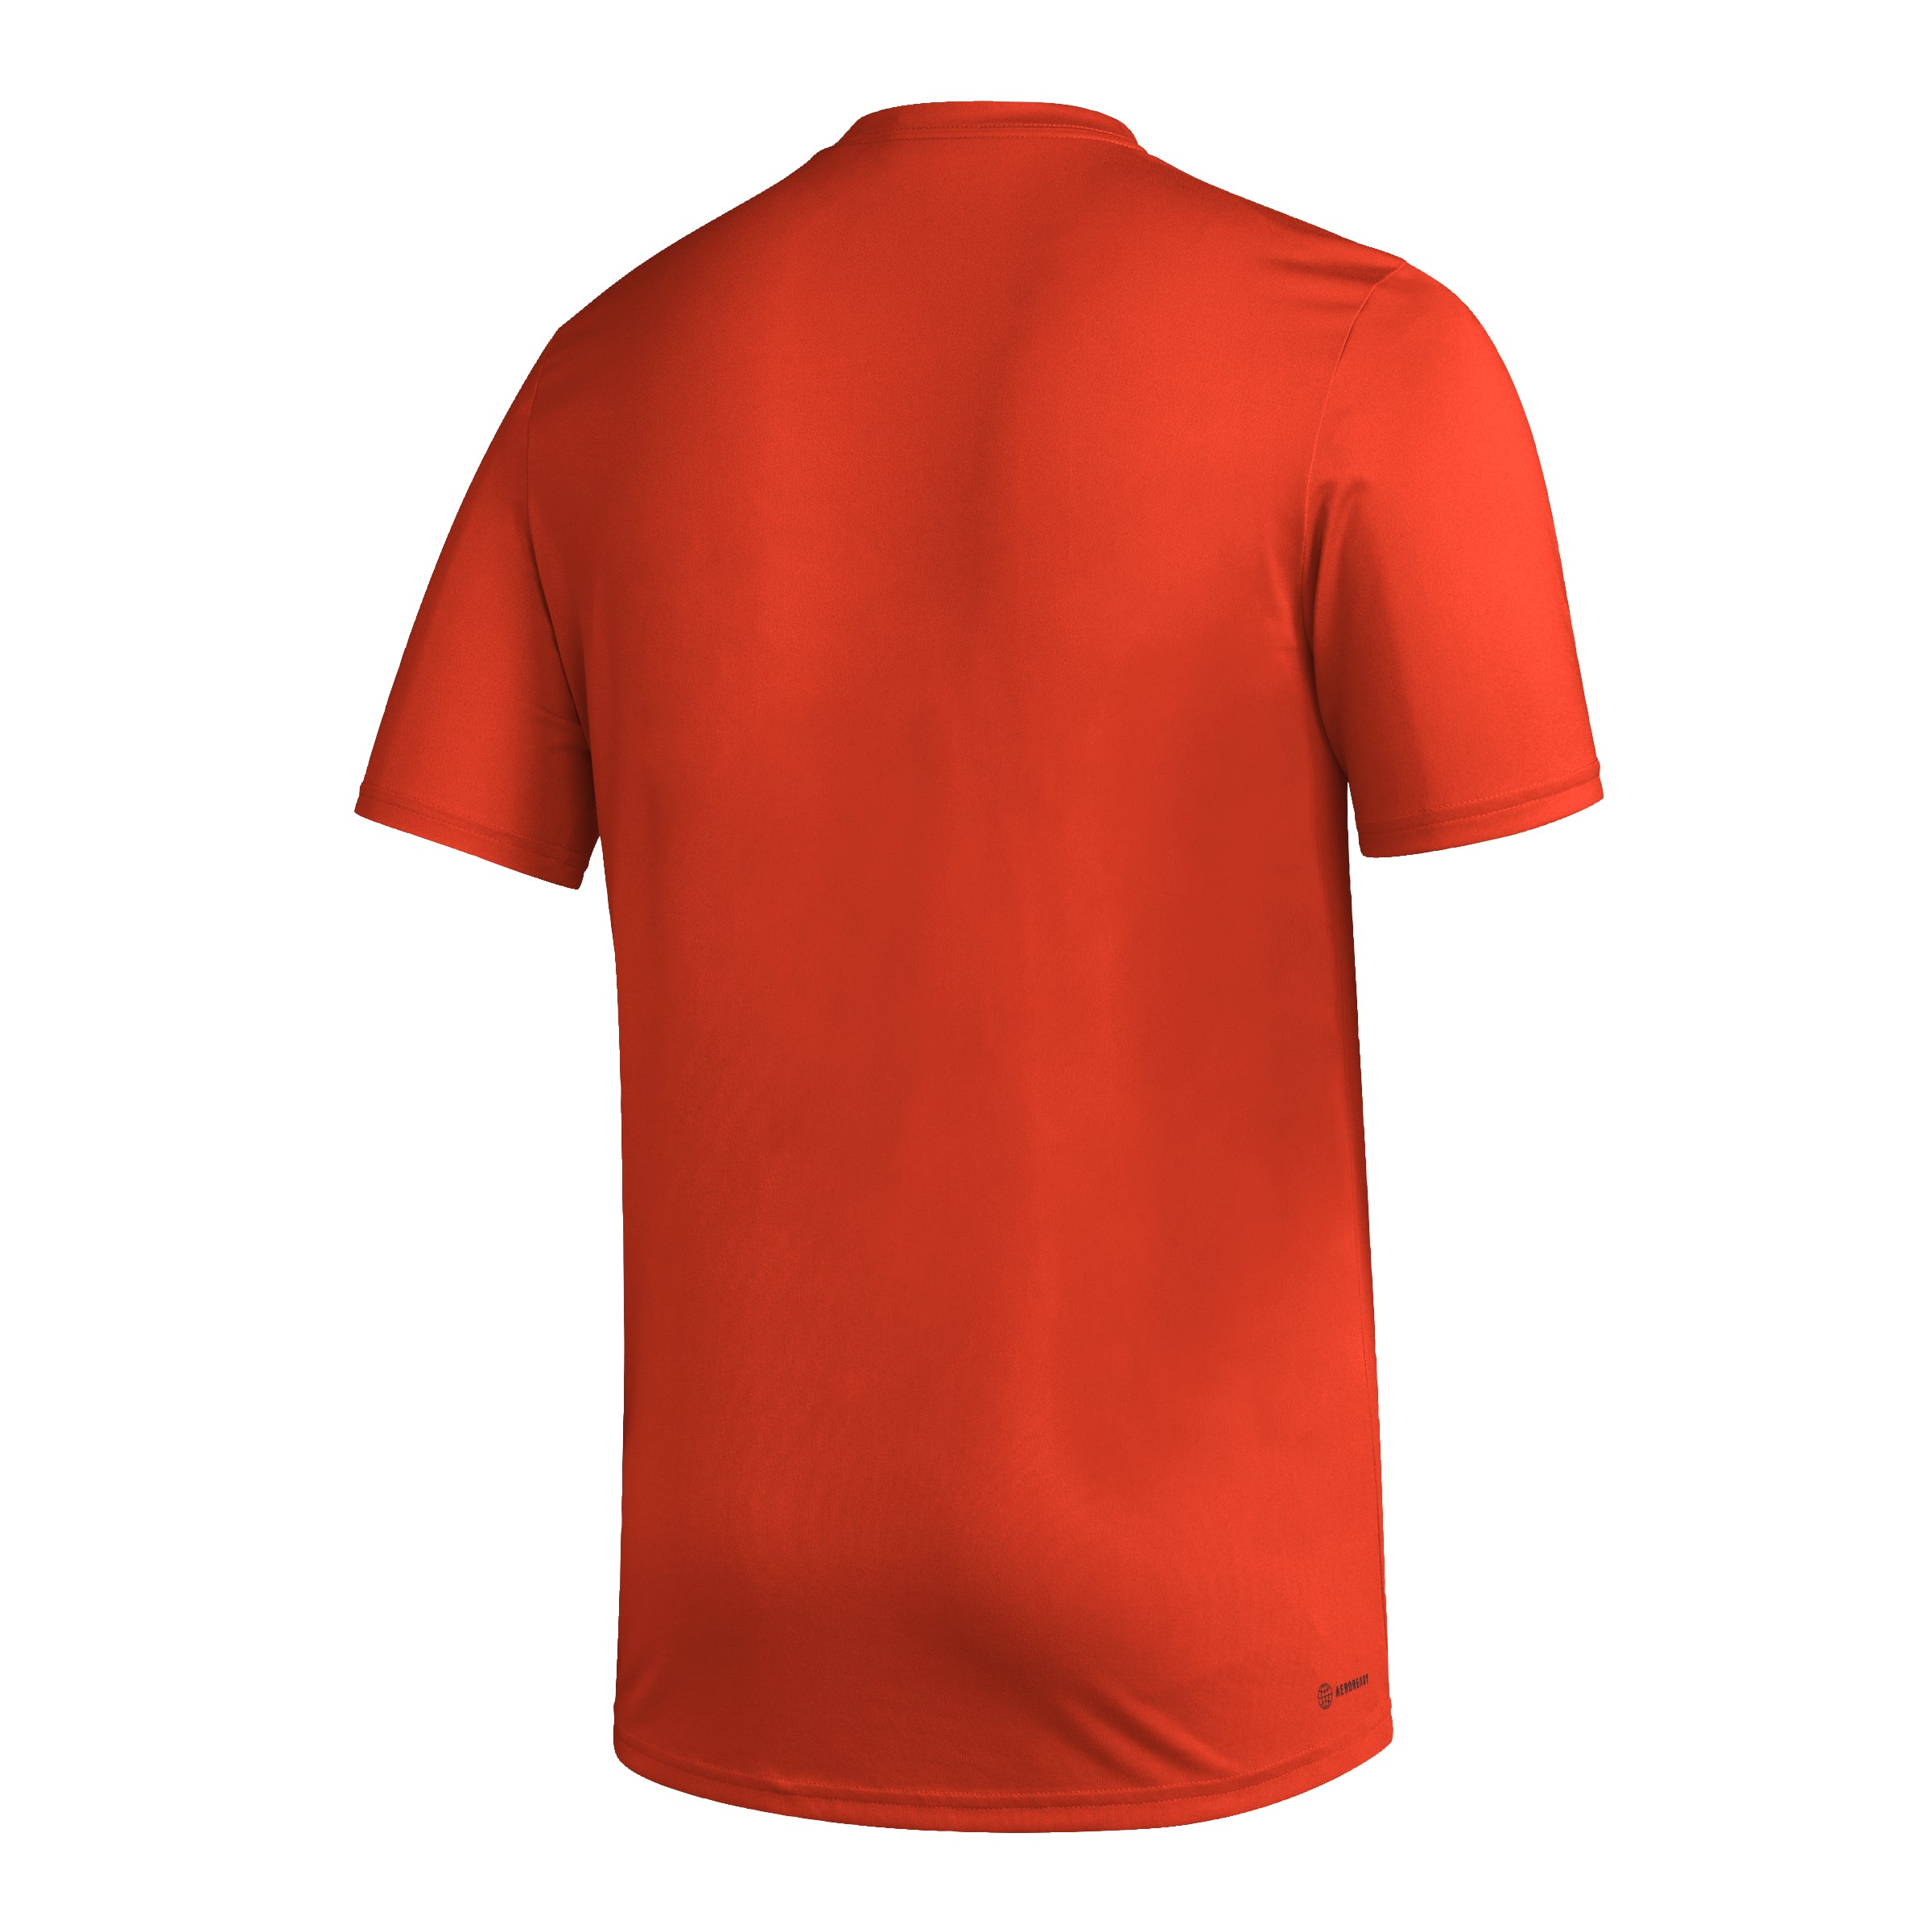 Miami Hurricanes adidas Aeroready Pregame T-Shirt - Orange